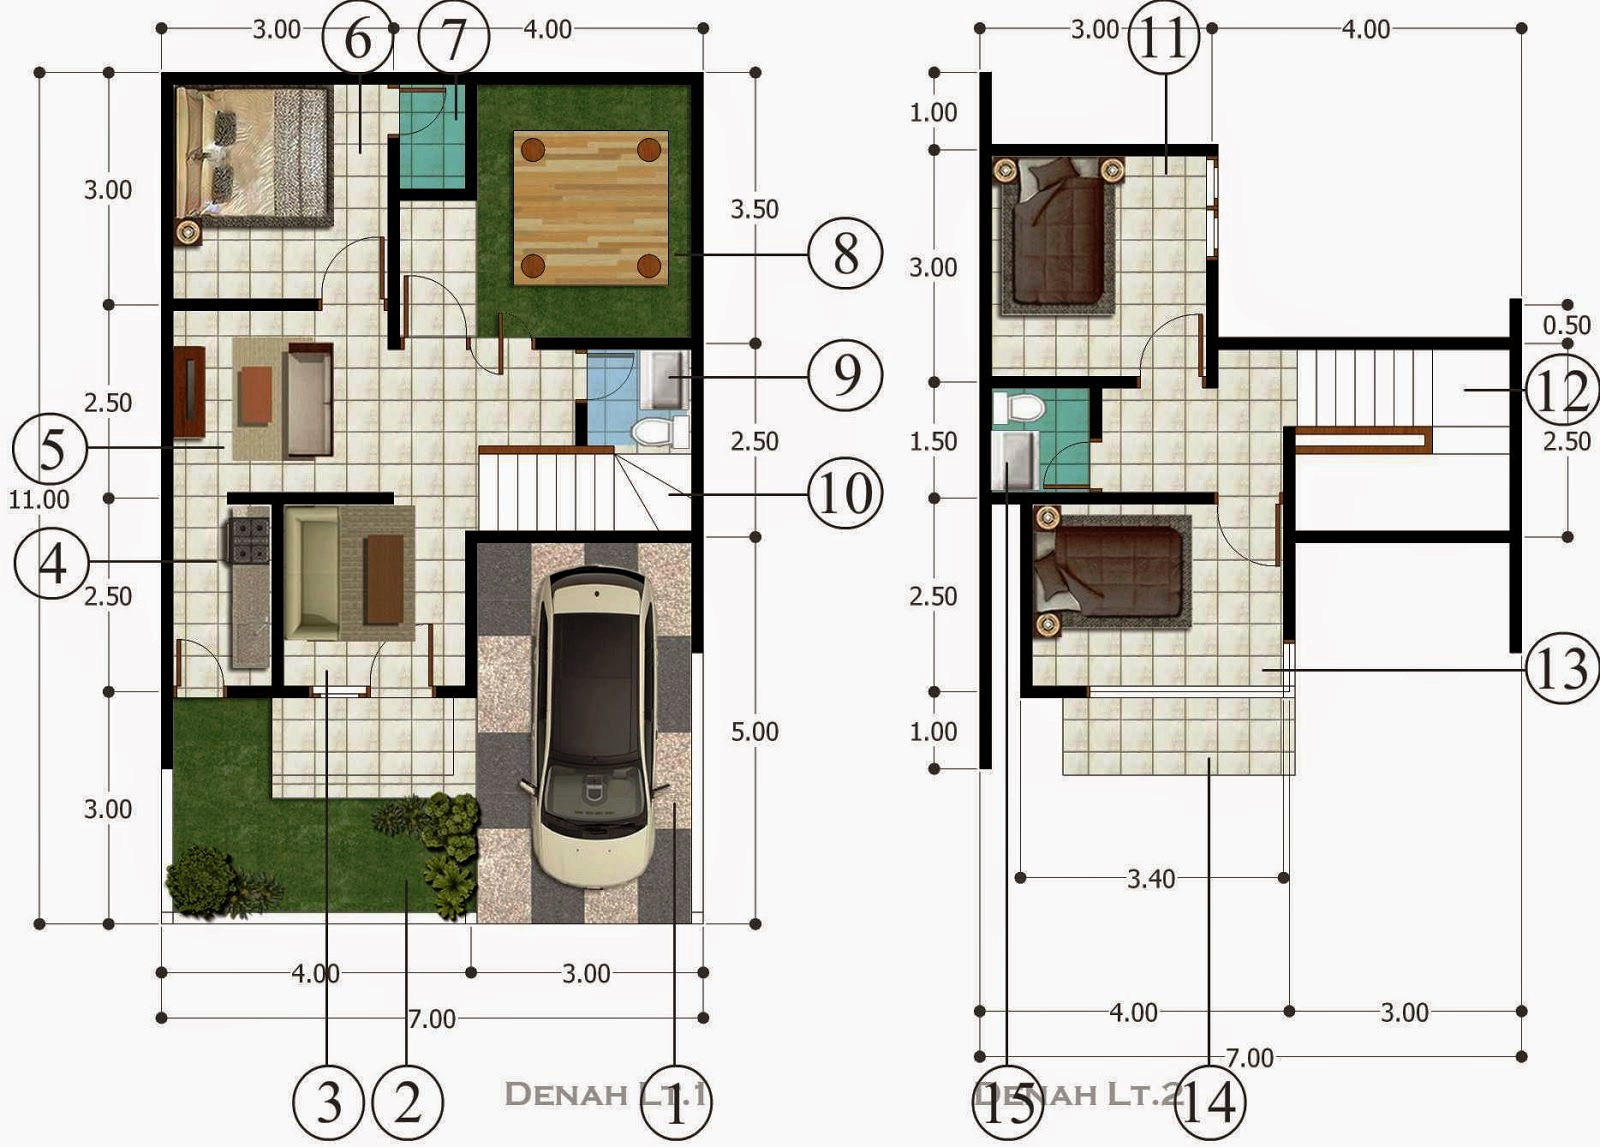 10 denah  rumah  type  70  minimalis 1 lantai  2 lantai  hook 